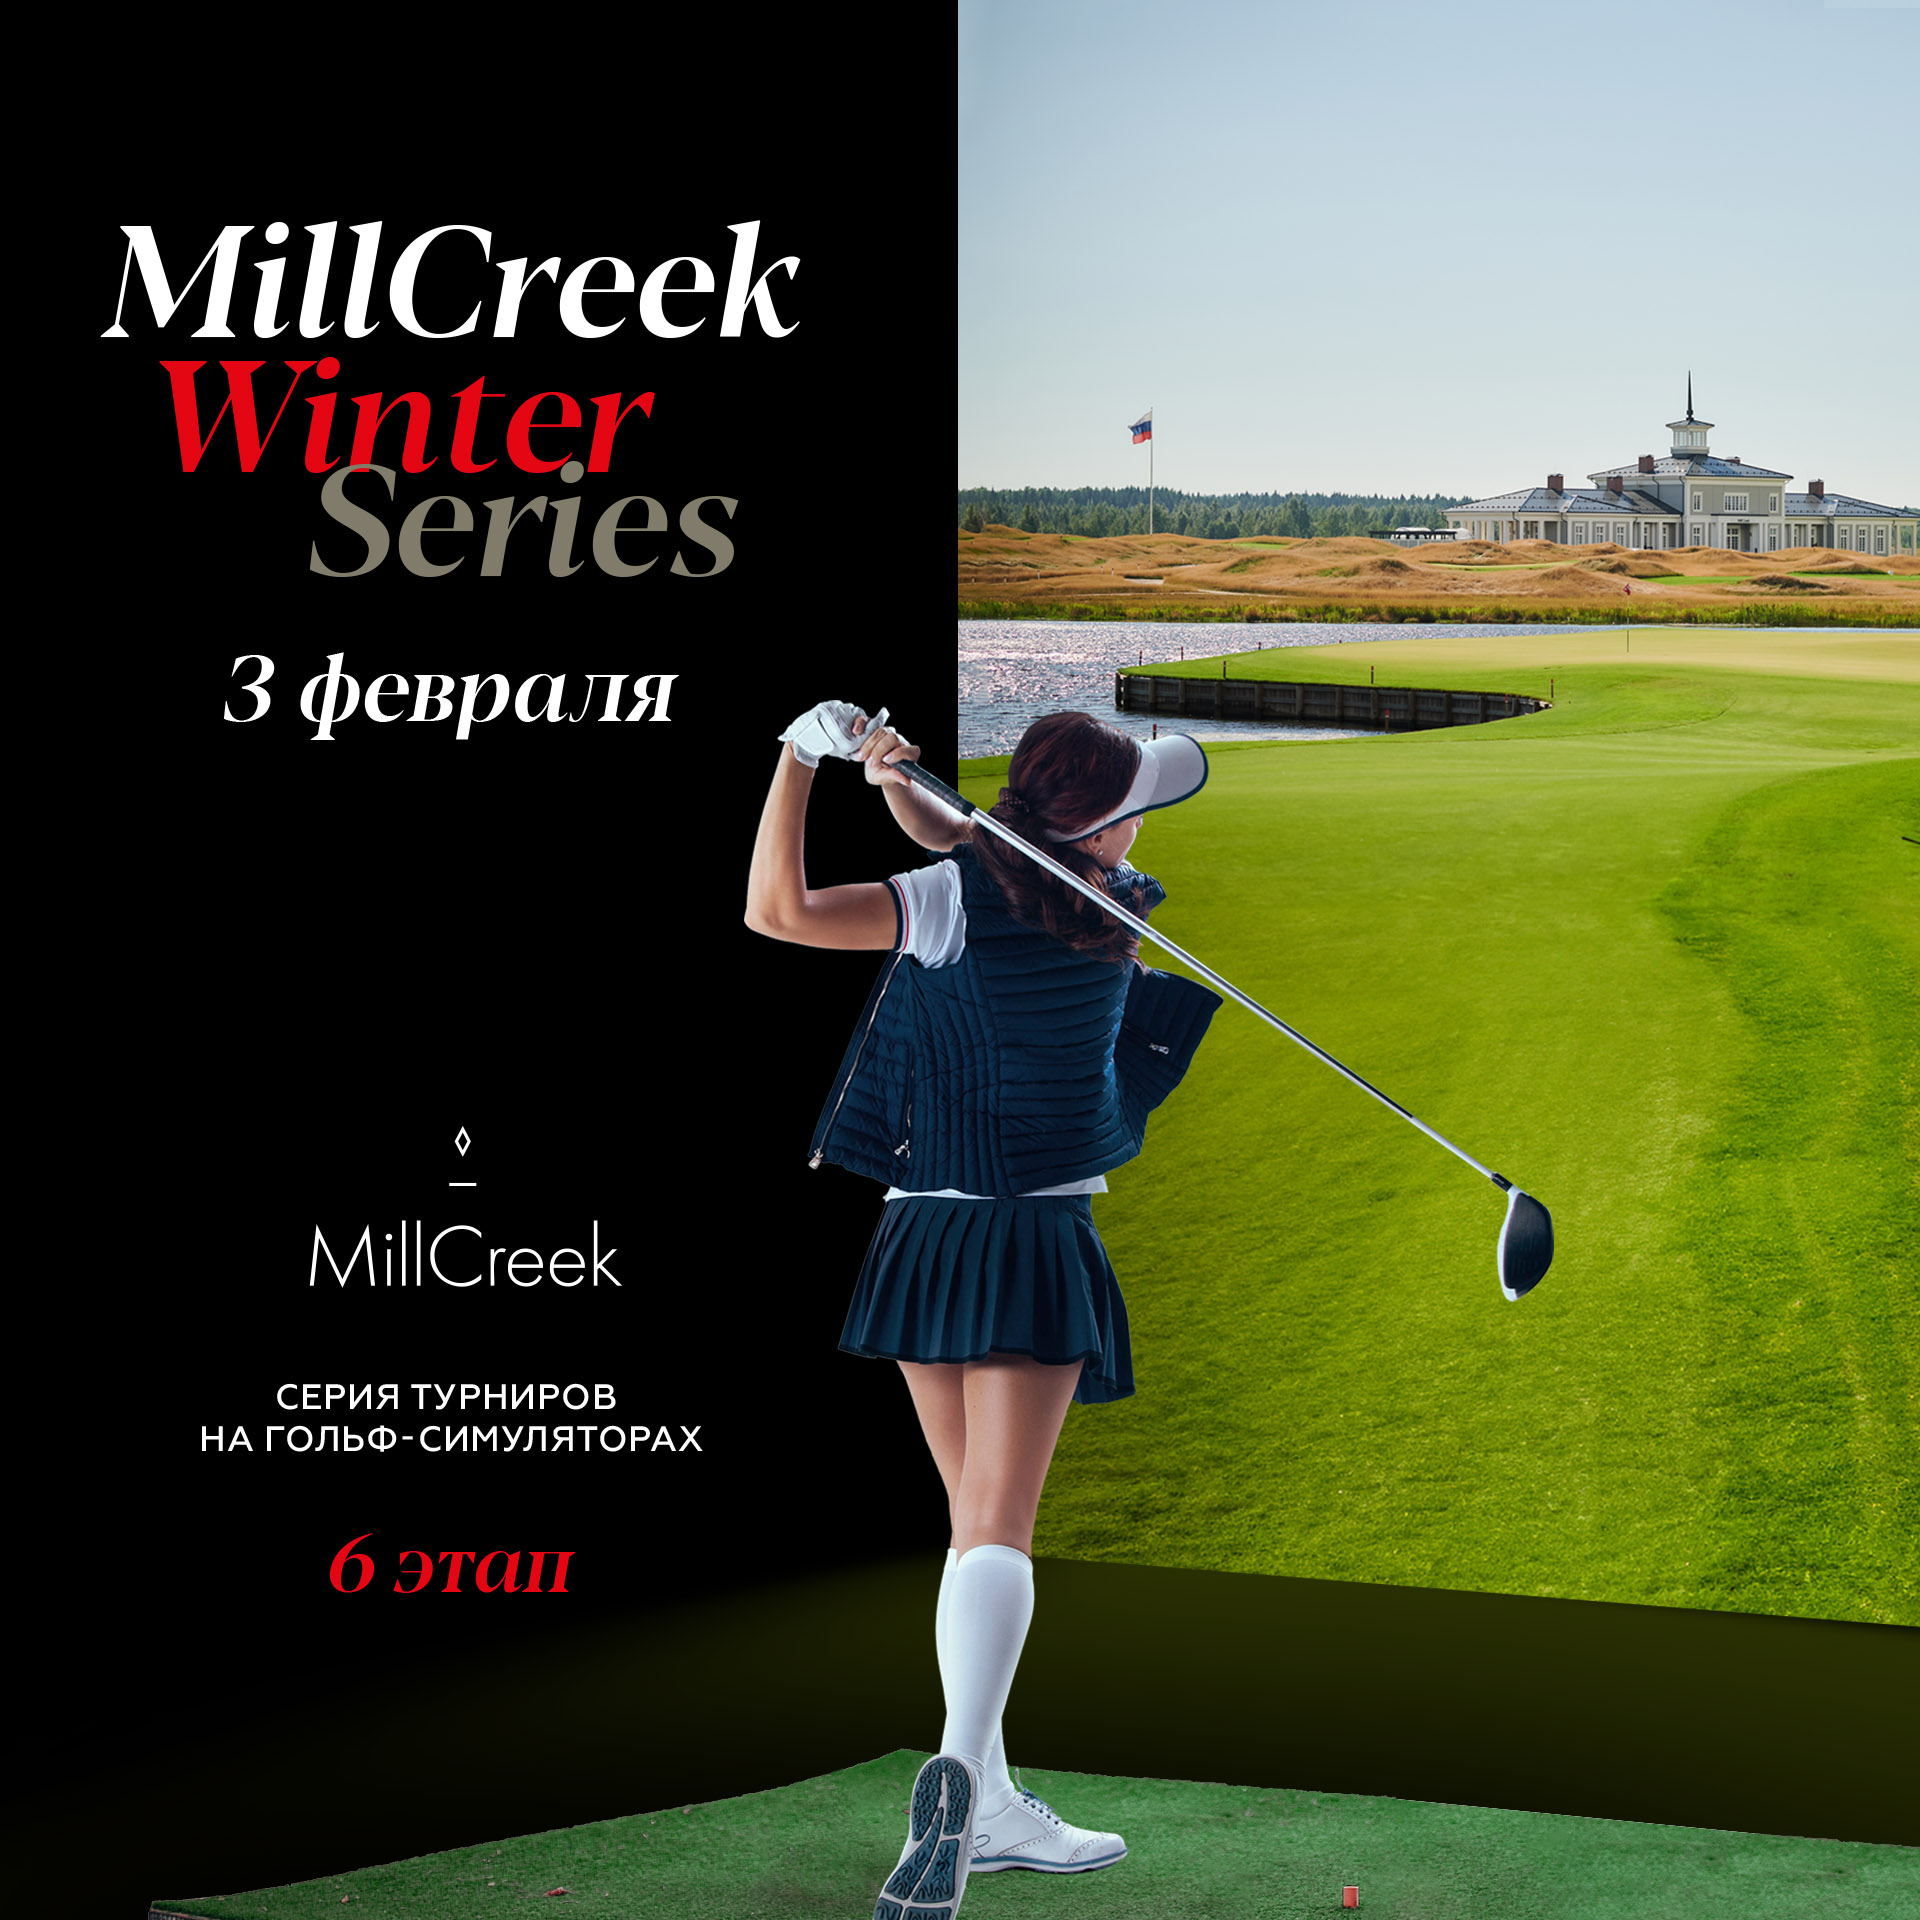 6 этап серии турниров MillCreek Winter Series